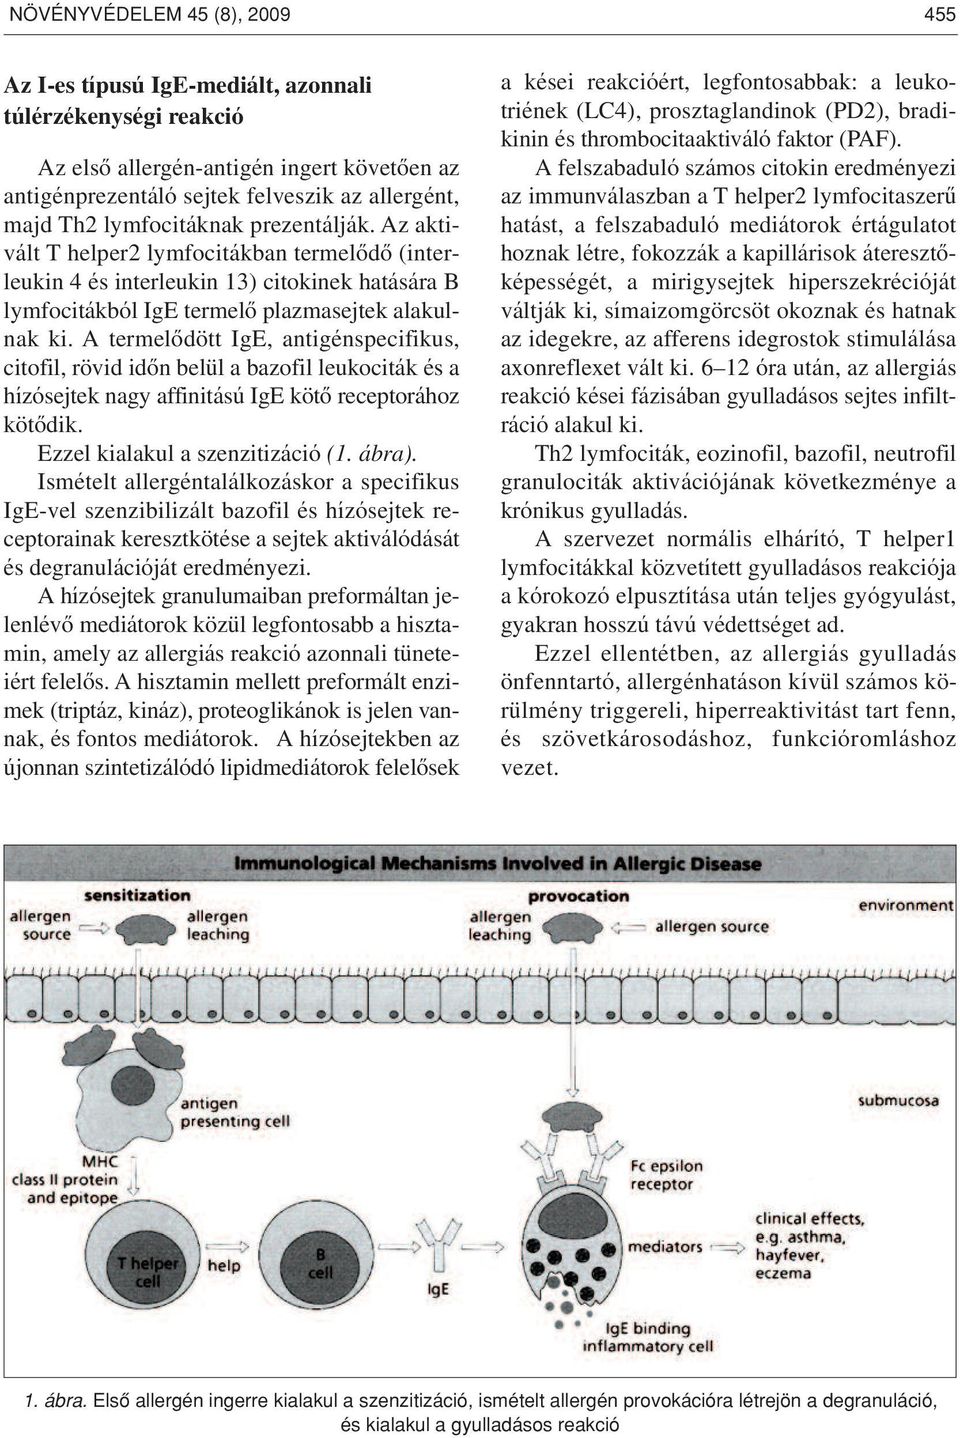 A termelôdött IgE, antigénspecifikus, citofil, rövid idôn belül a bazofil leukociták és a hízósejtek nagy affinitású IgE kötô receptorához kötôdik. Ezzel kialakul a szenzitizáció (1. ábra).